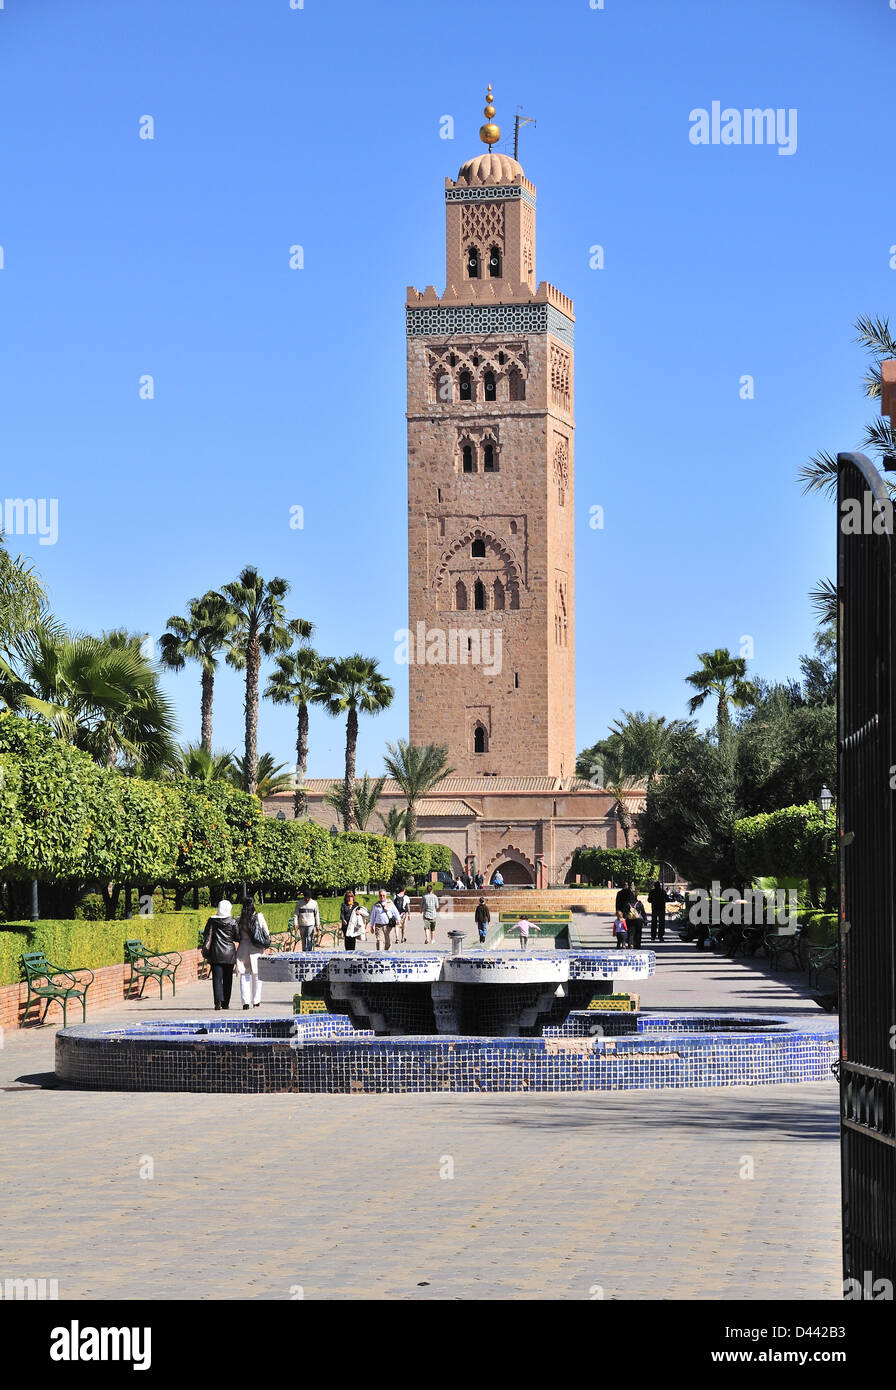 Minareto della Moschea di Koutoubia con persone a piedi attraverso i giardini di Koutoubia, Marrakech (Marrakech) Marocco Foto Stock